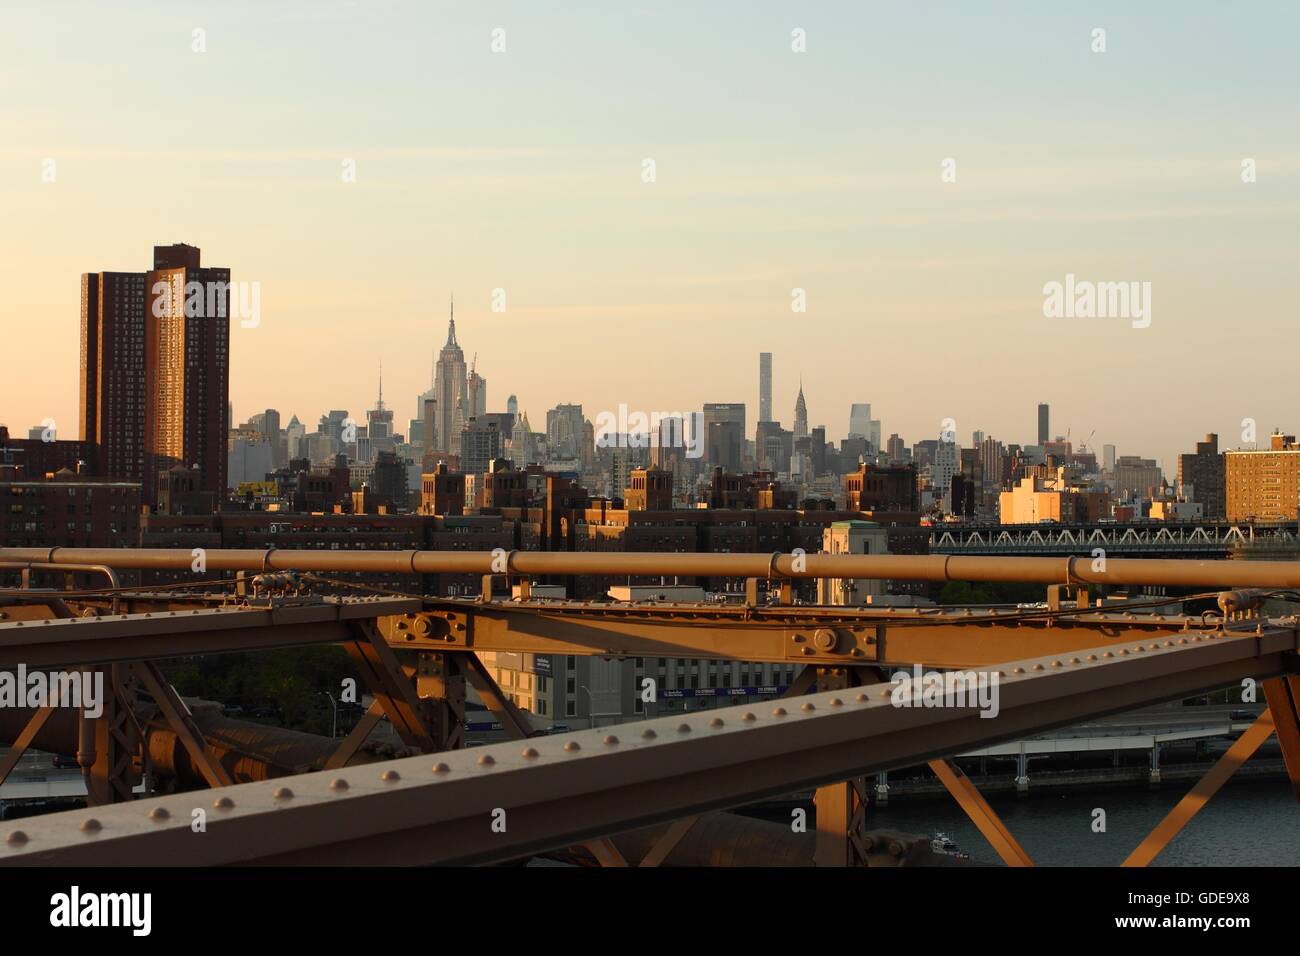 Lower Manhattan view, NYC, USA Stock Photo